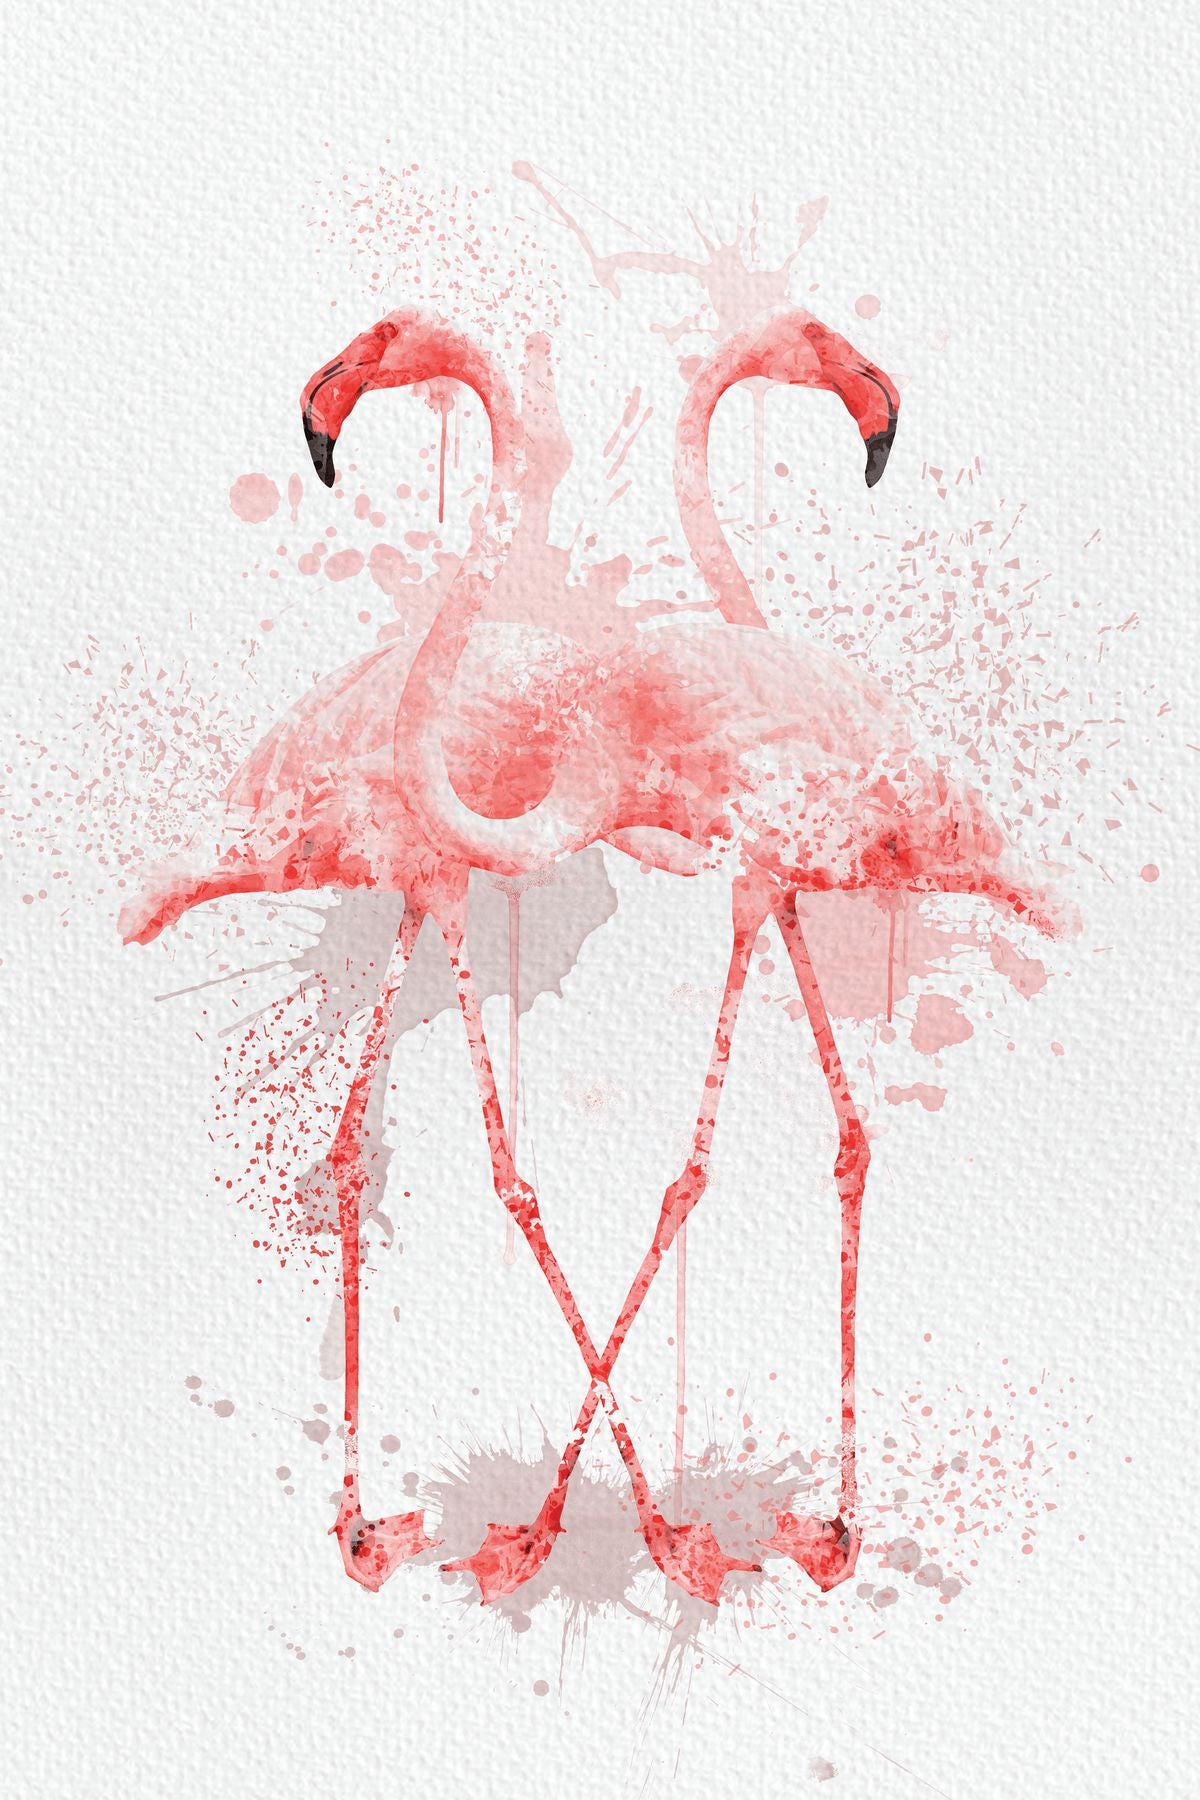 Flamingo Pair Watercolor Splash